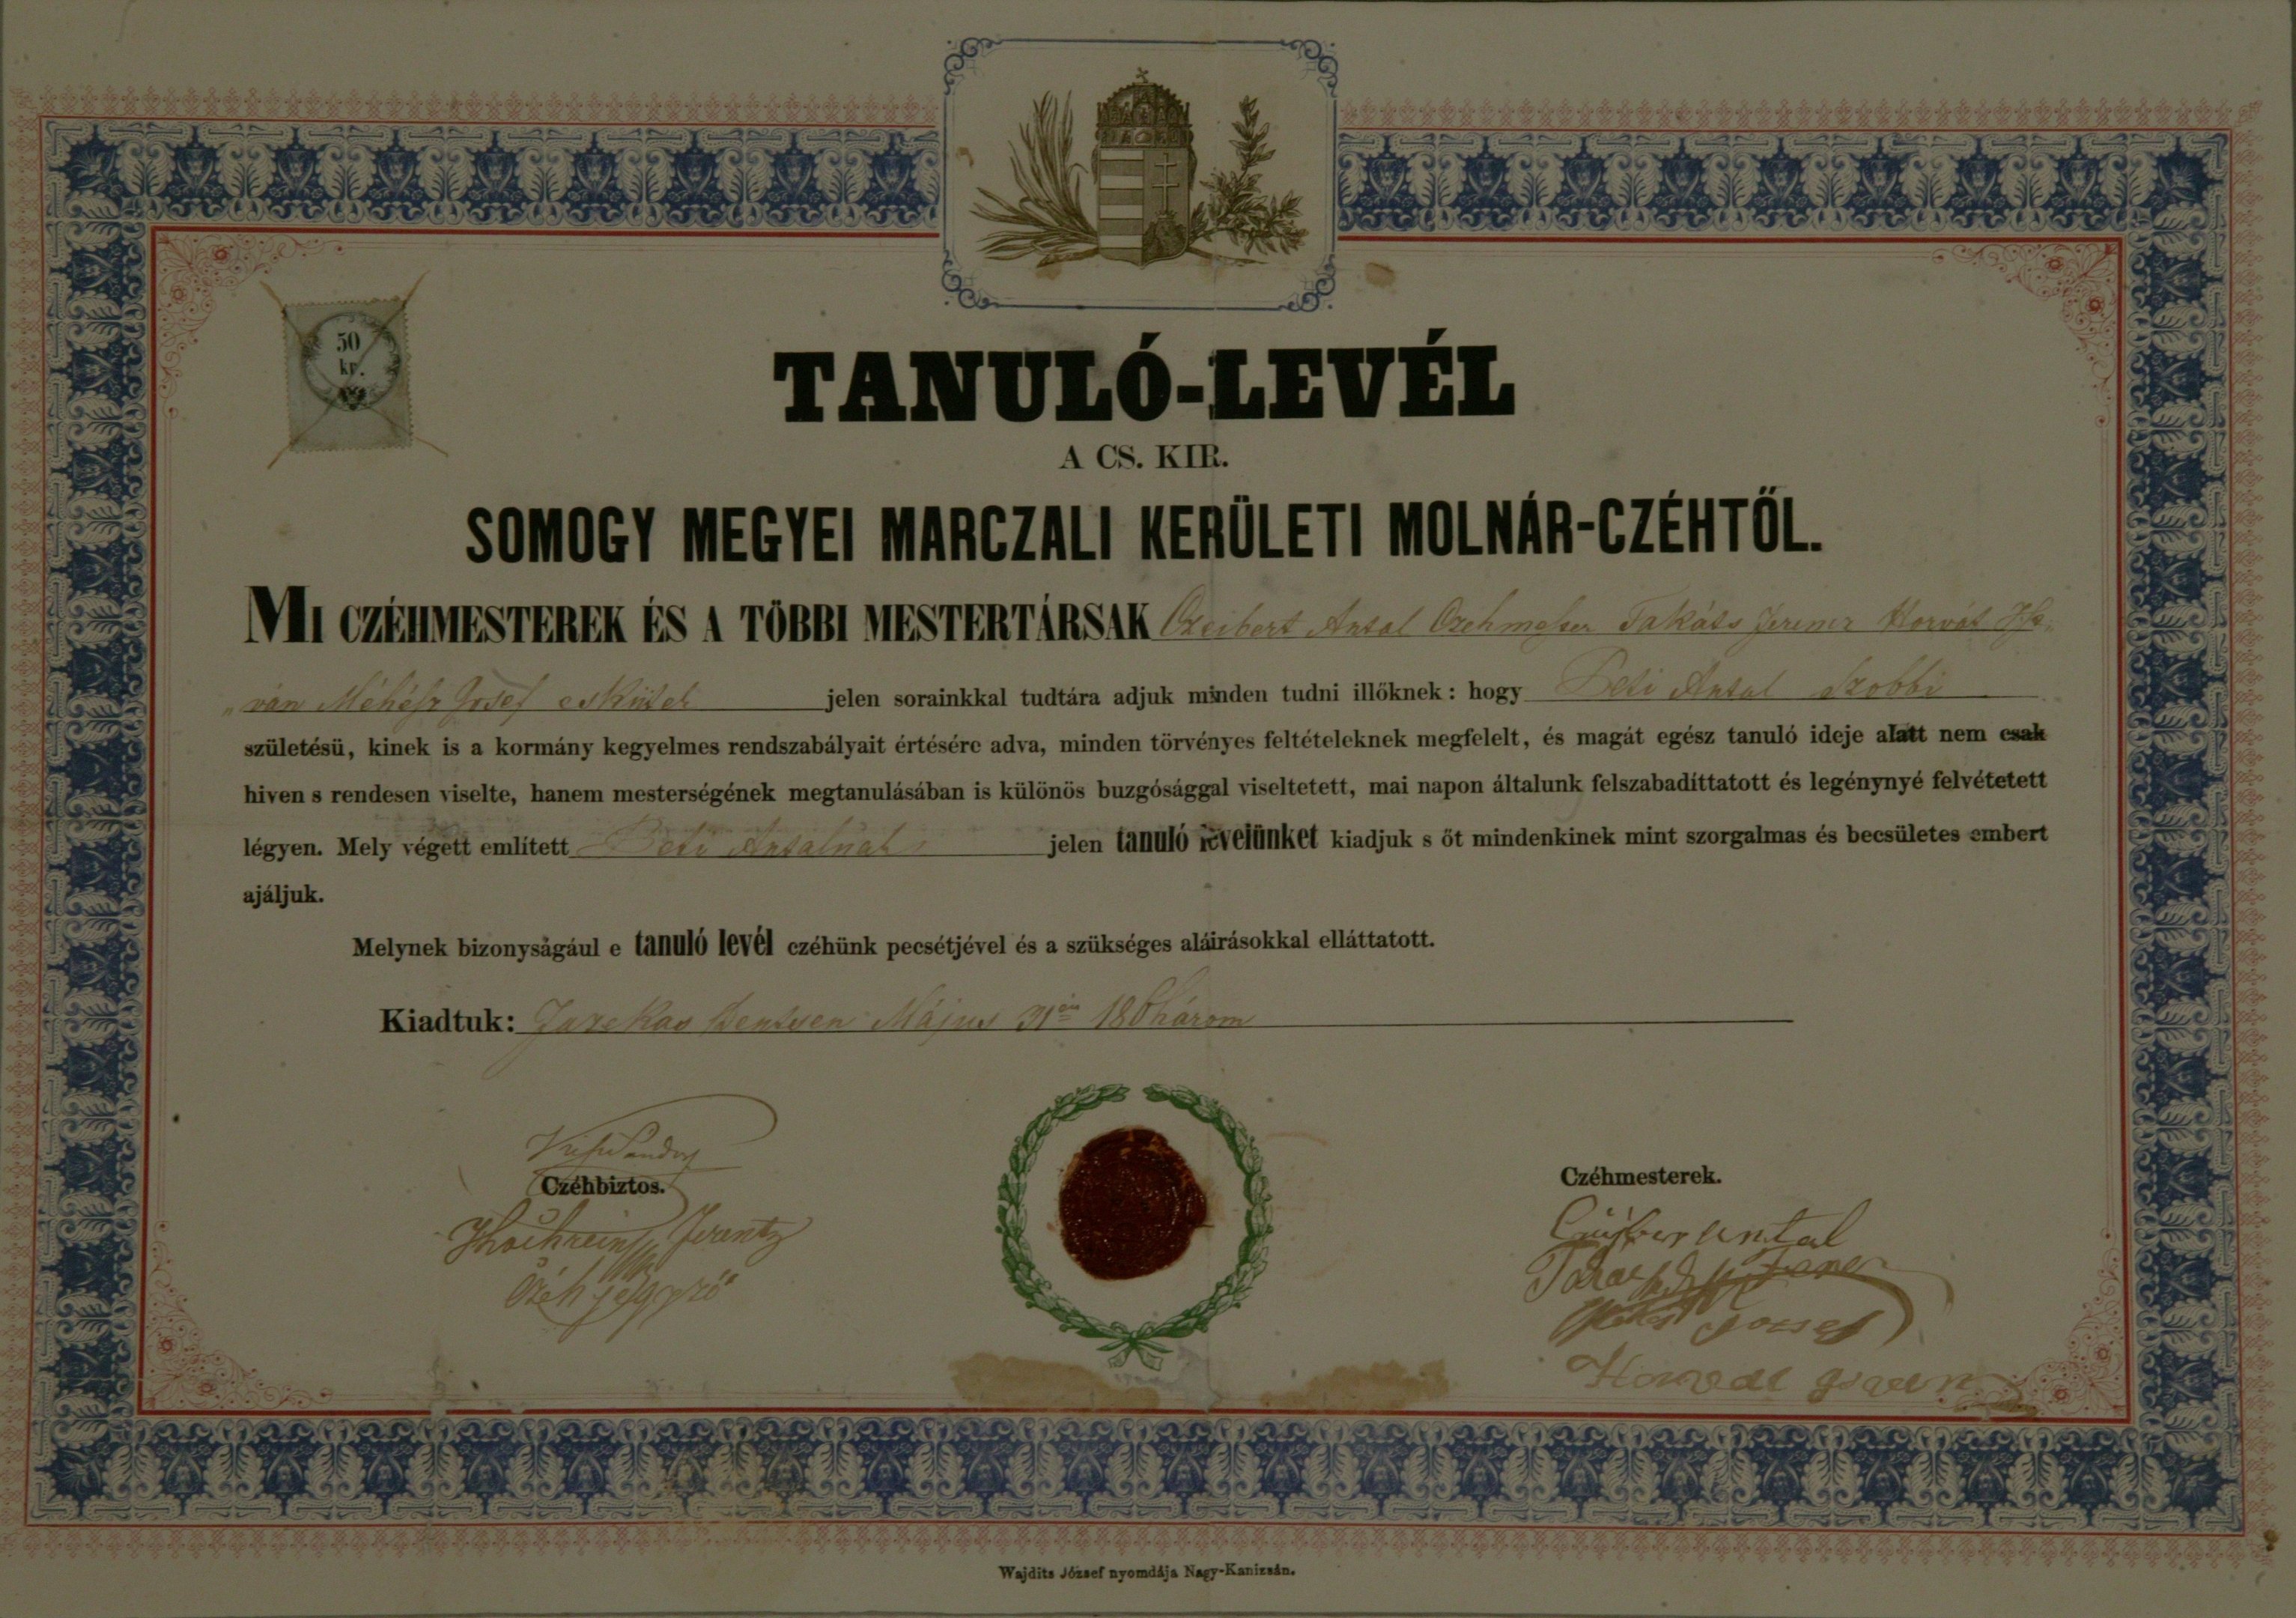 A Somogy megyei Marczali kerületi molnárcéh által kiállított tanulólevél Peti Antal részére (Magyar Környezetvédelmi és Vízügyi Múzeum - Duna Múzeum CC BY-NC-SA)